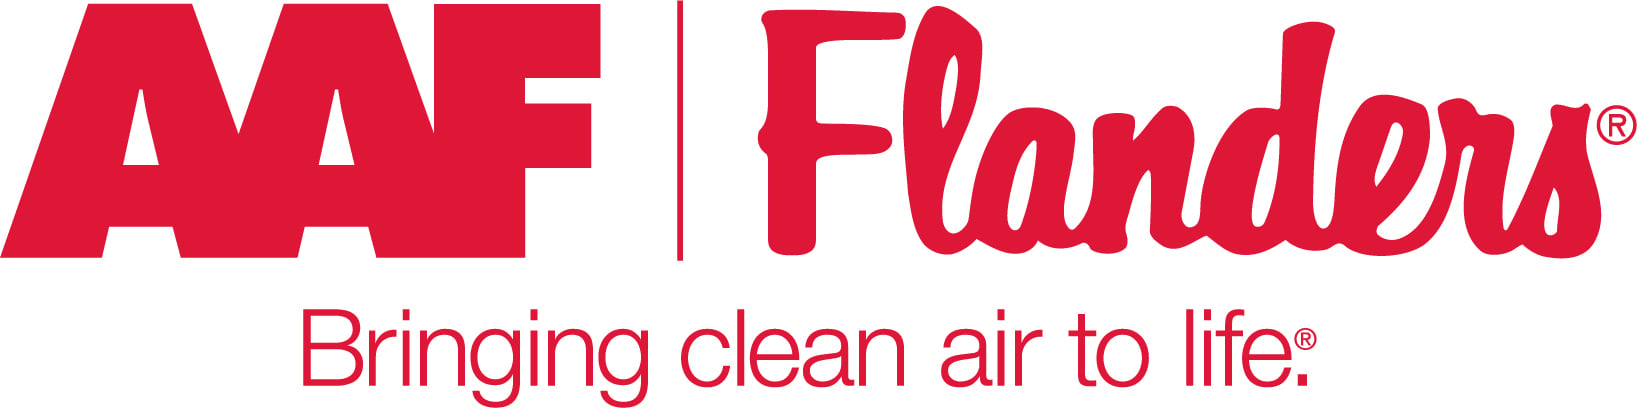 AAF Flanders Logo Red